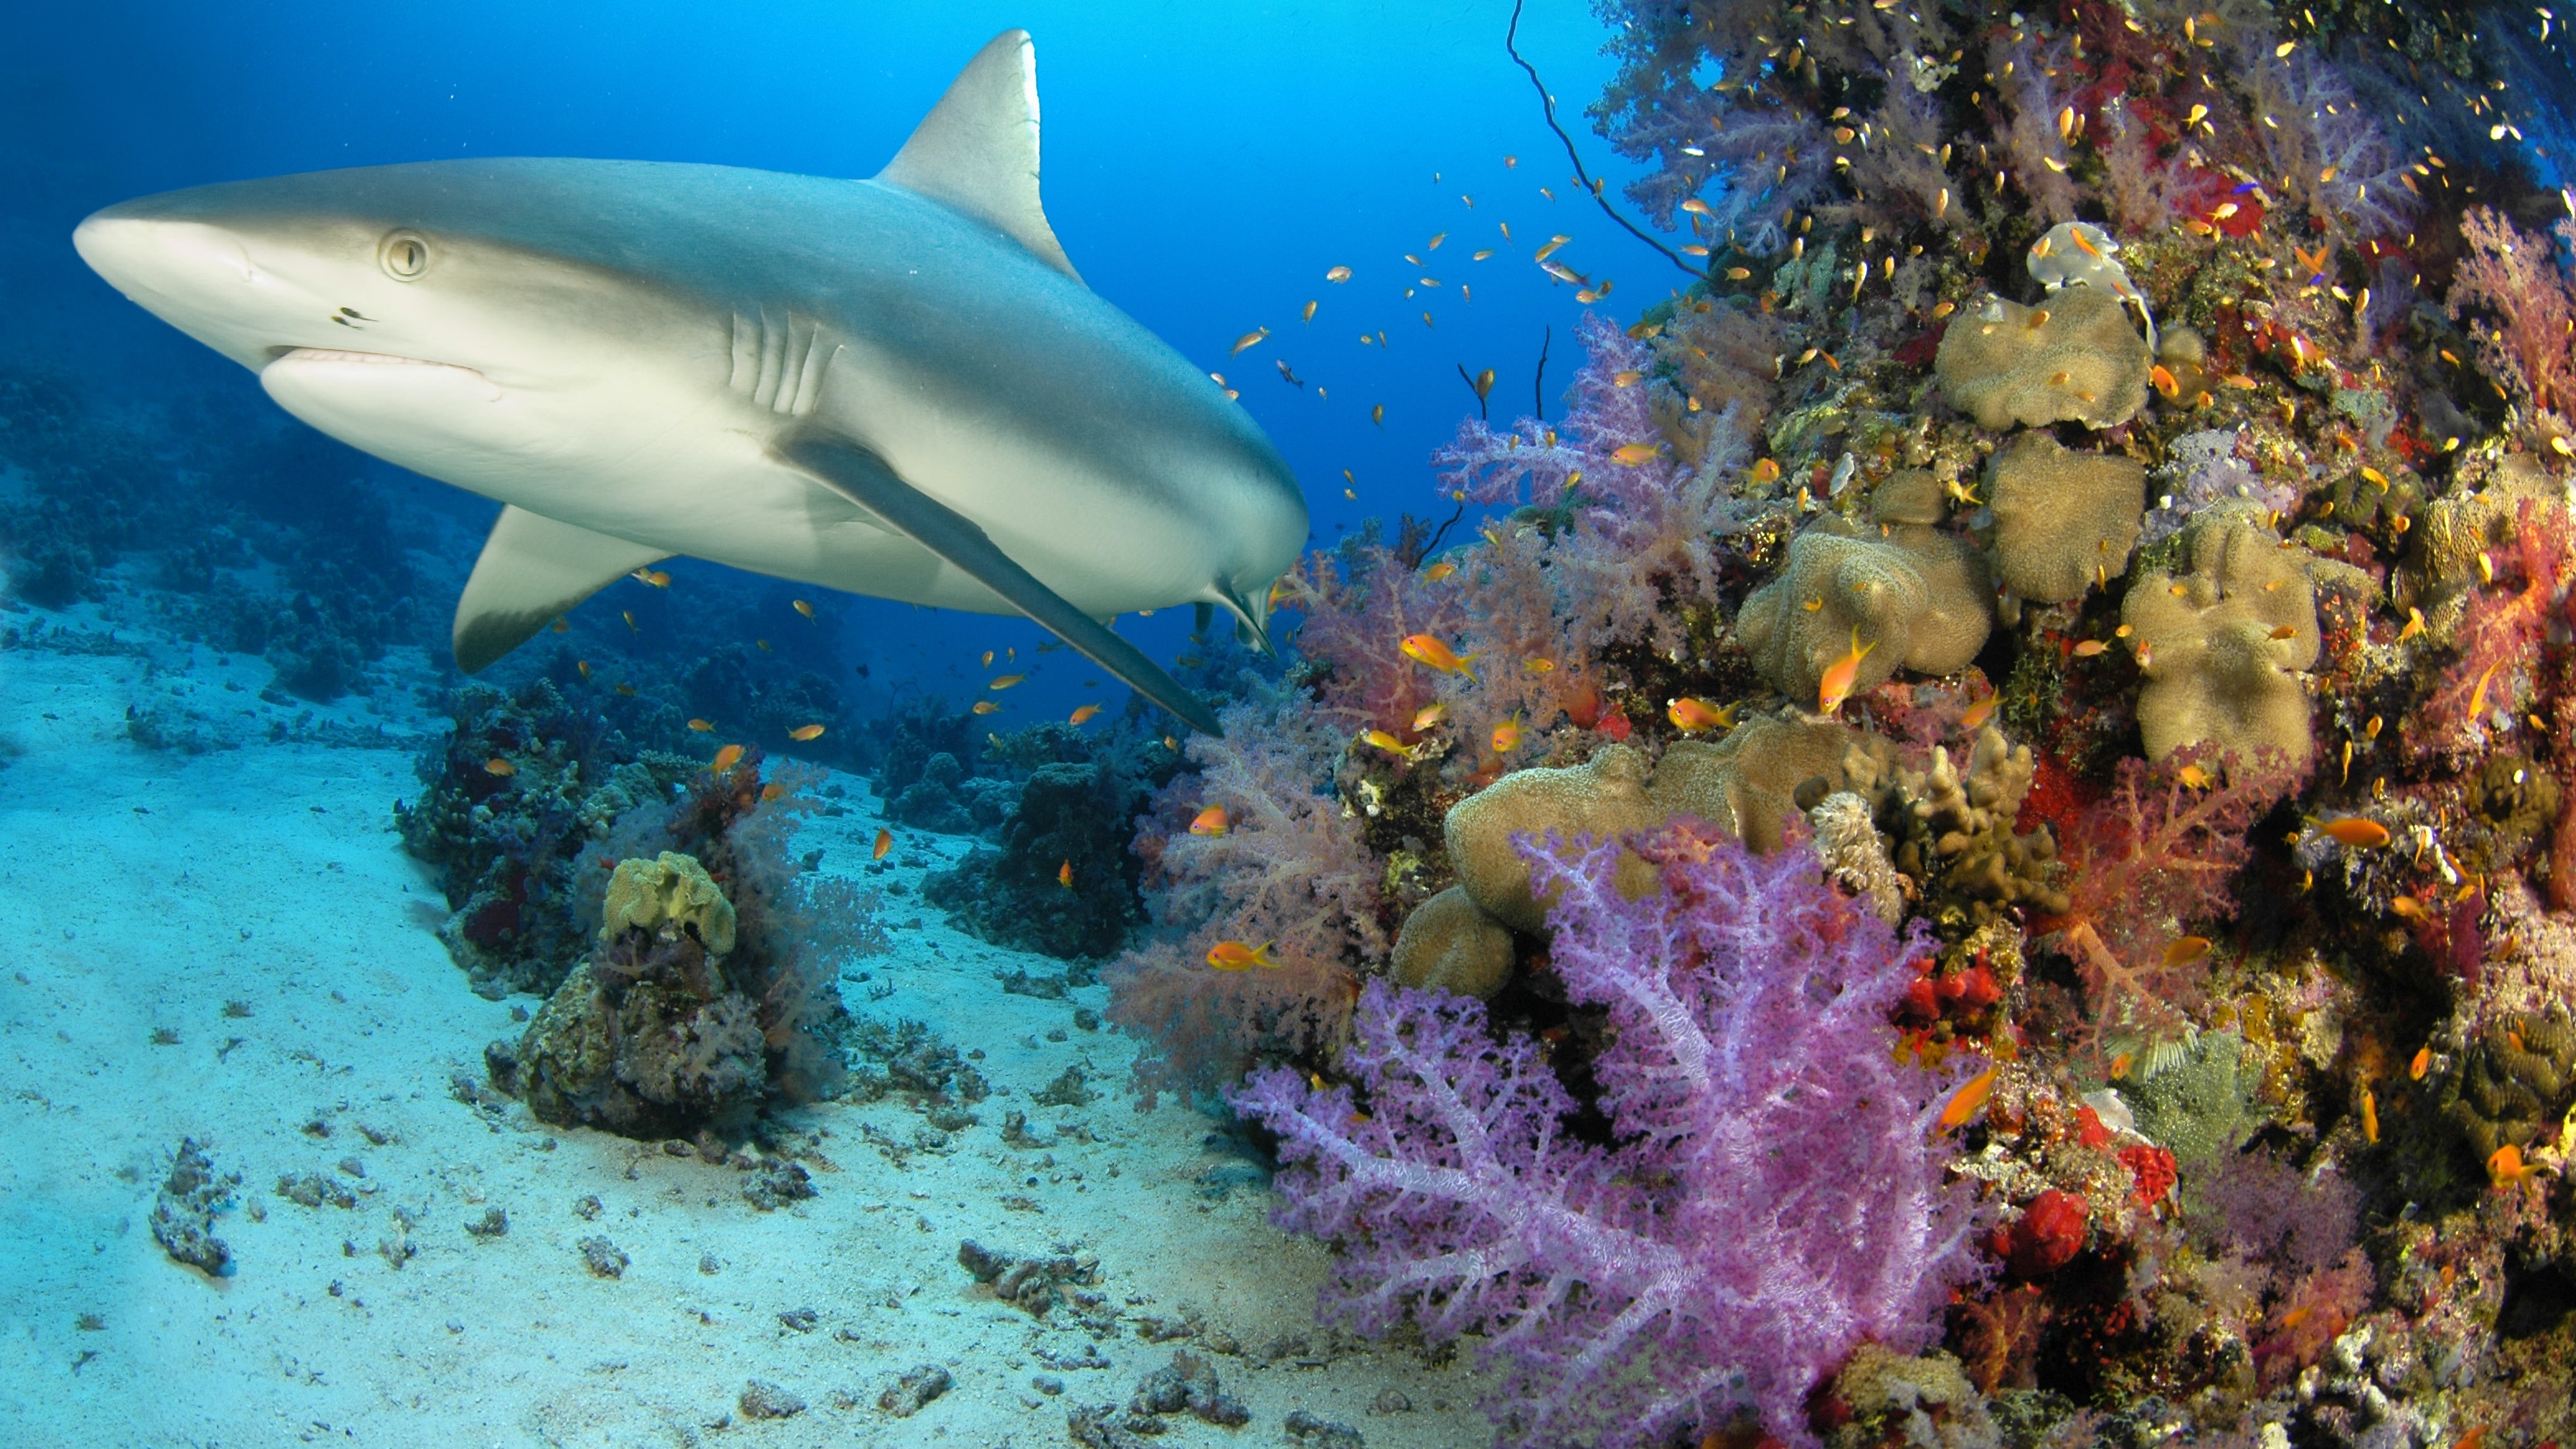 Le déclin des requin menace les écosystèmes marins
Le déclin des requin menace les écosystèmes marins